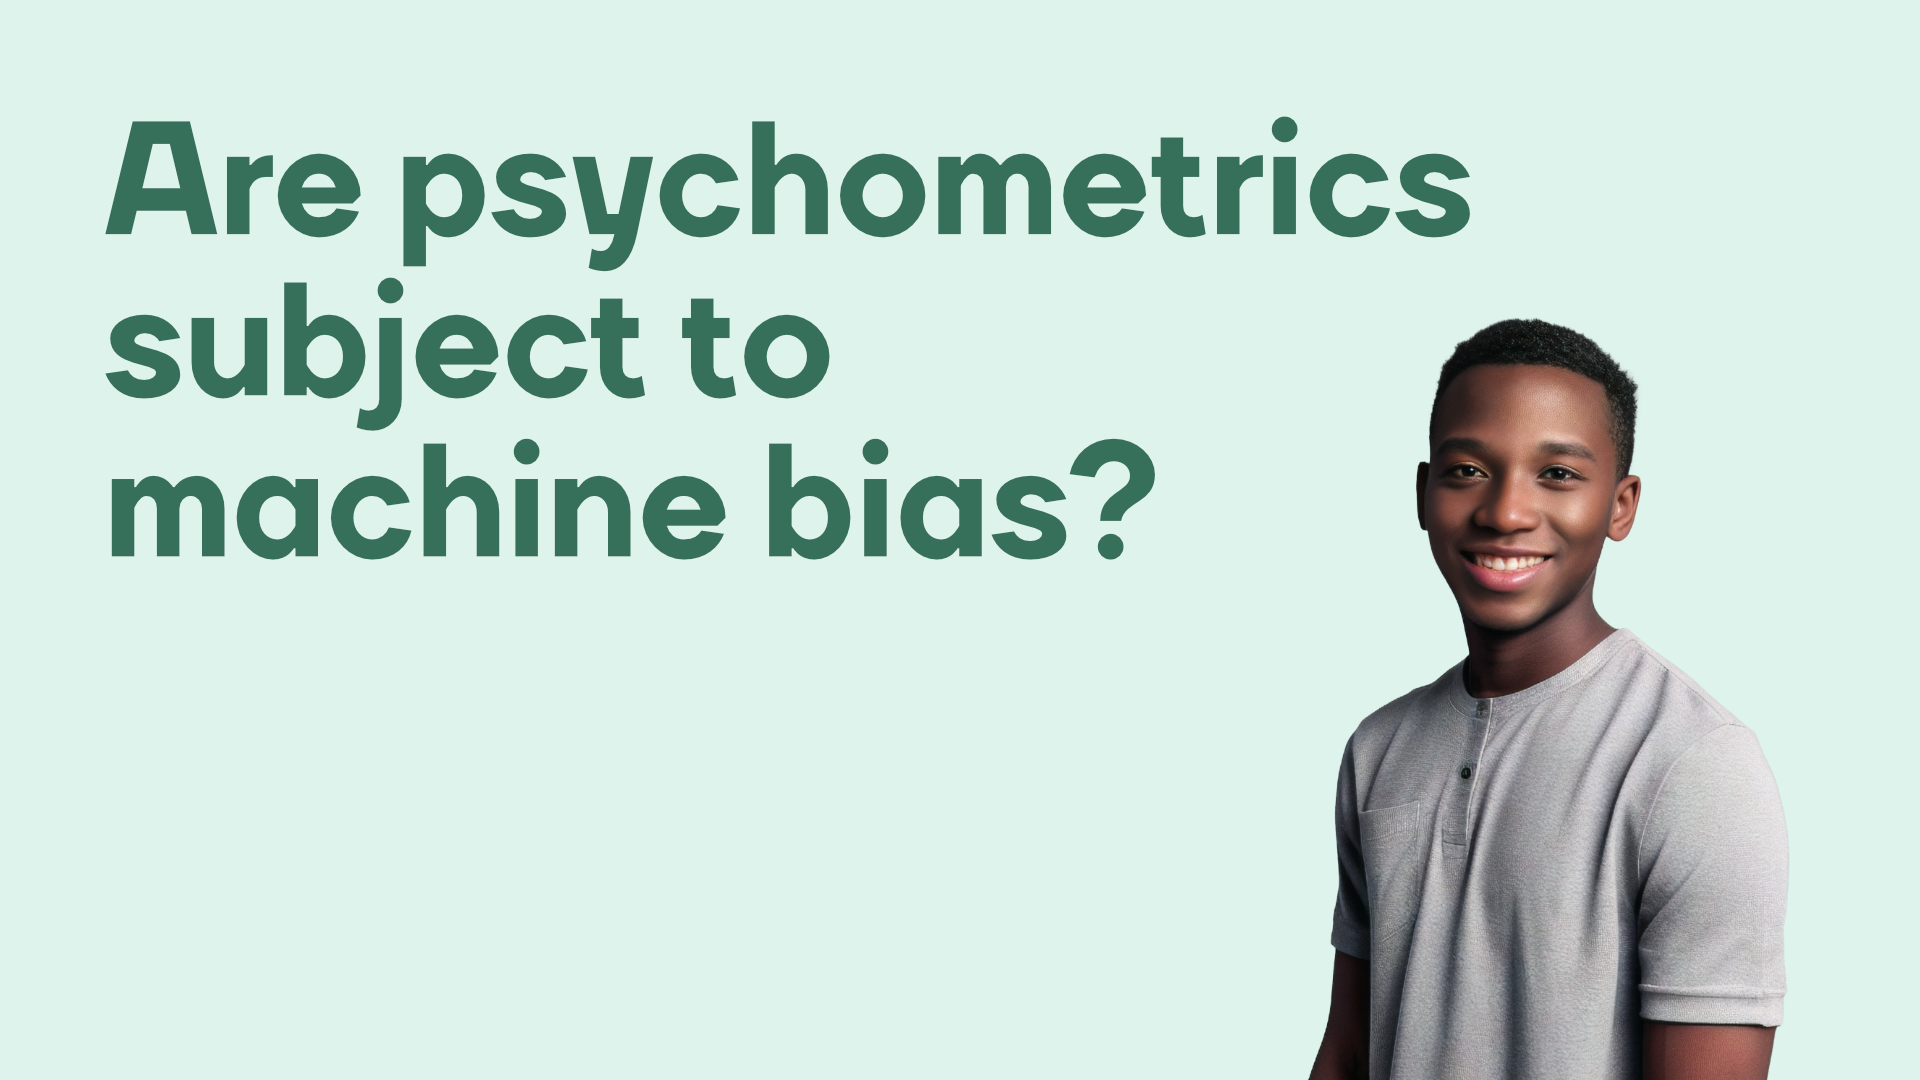 Are psychometrics subject to machine bias?